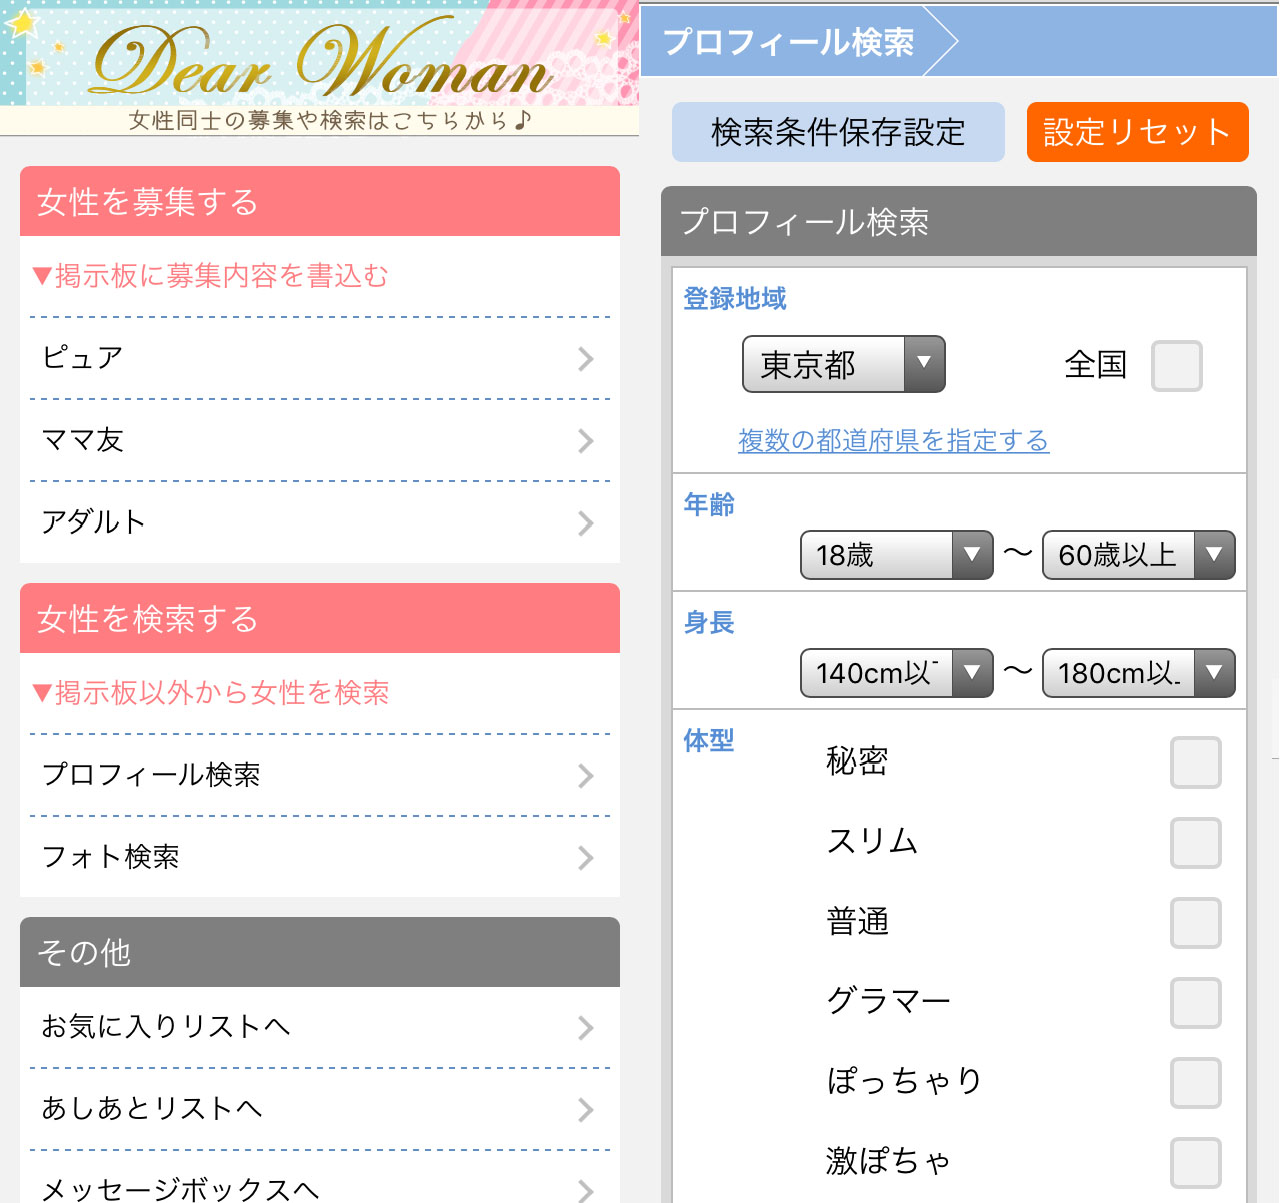 掲示板やプロフィール検索で女性ユーザーを検索